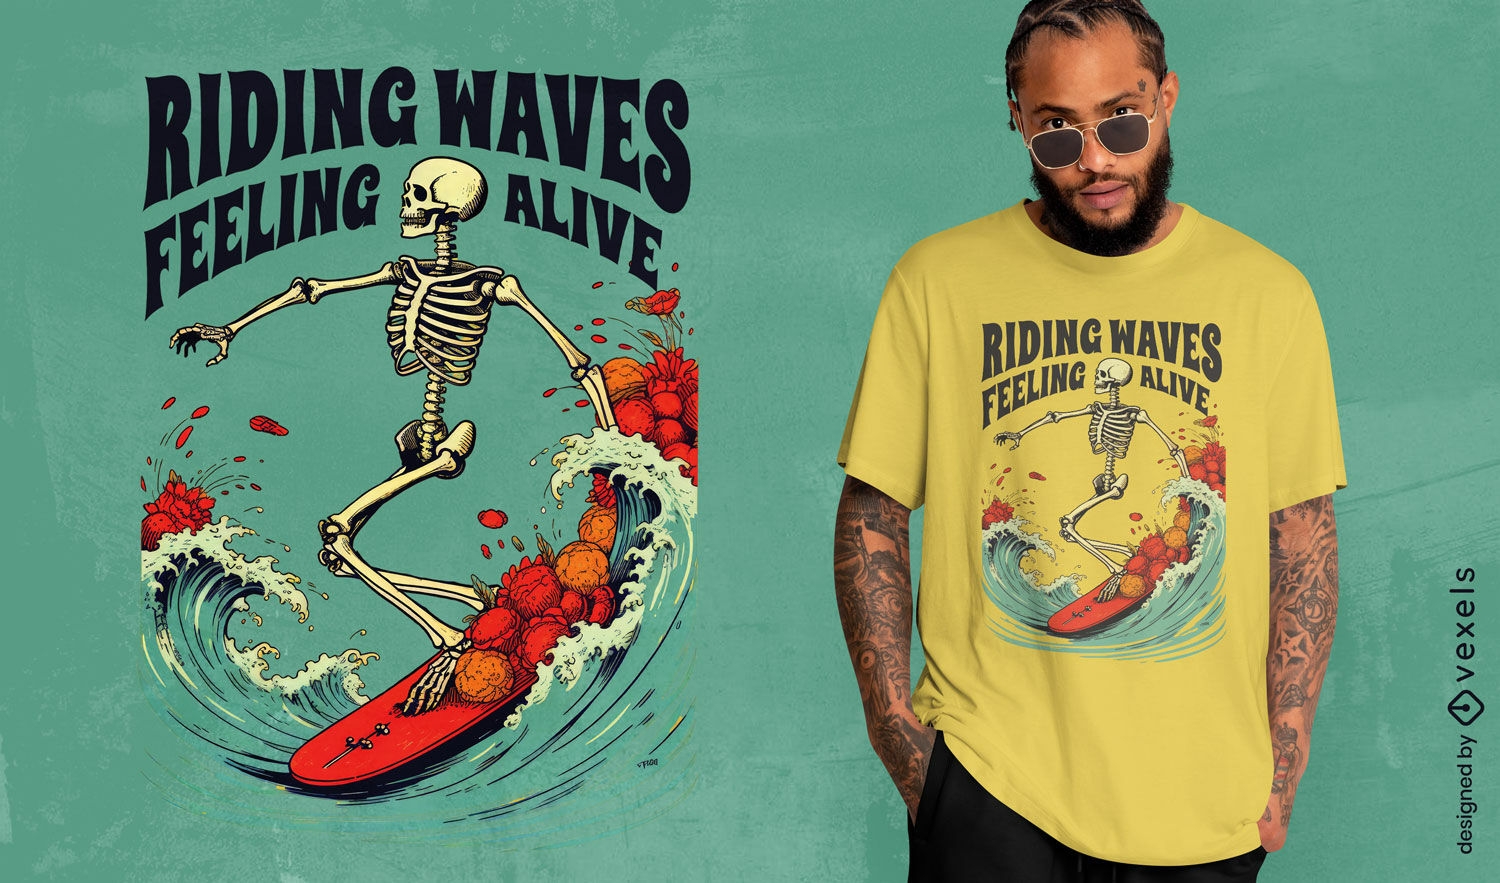 Riding waves skeleton t-shirt design